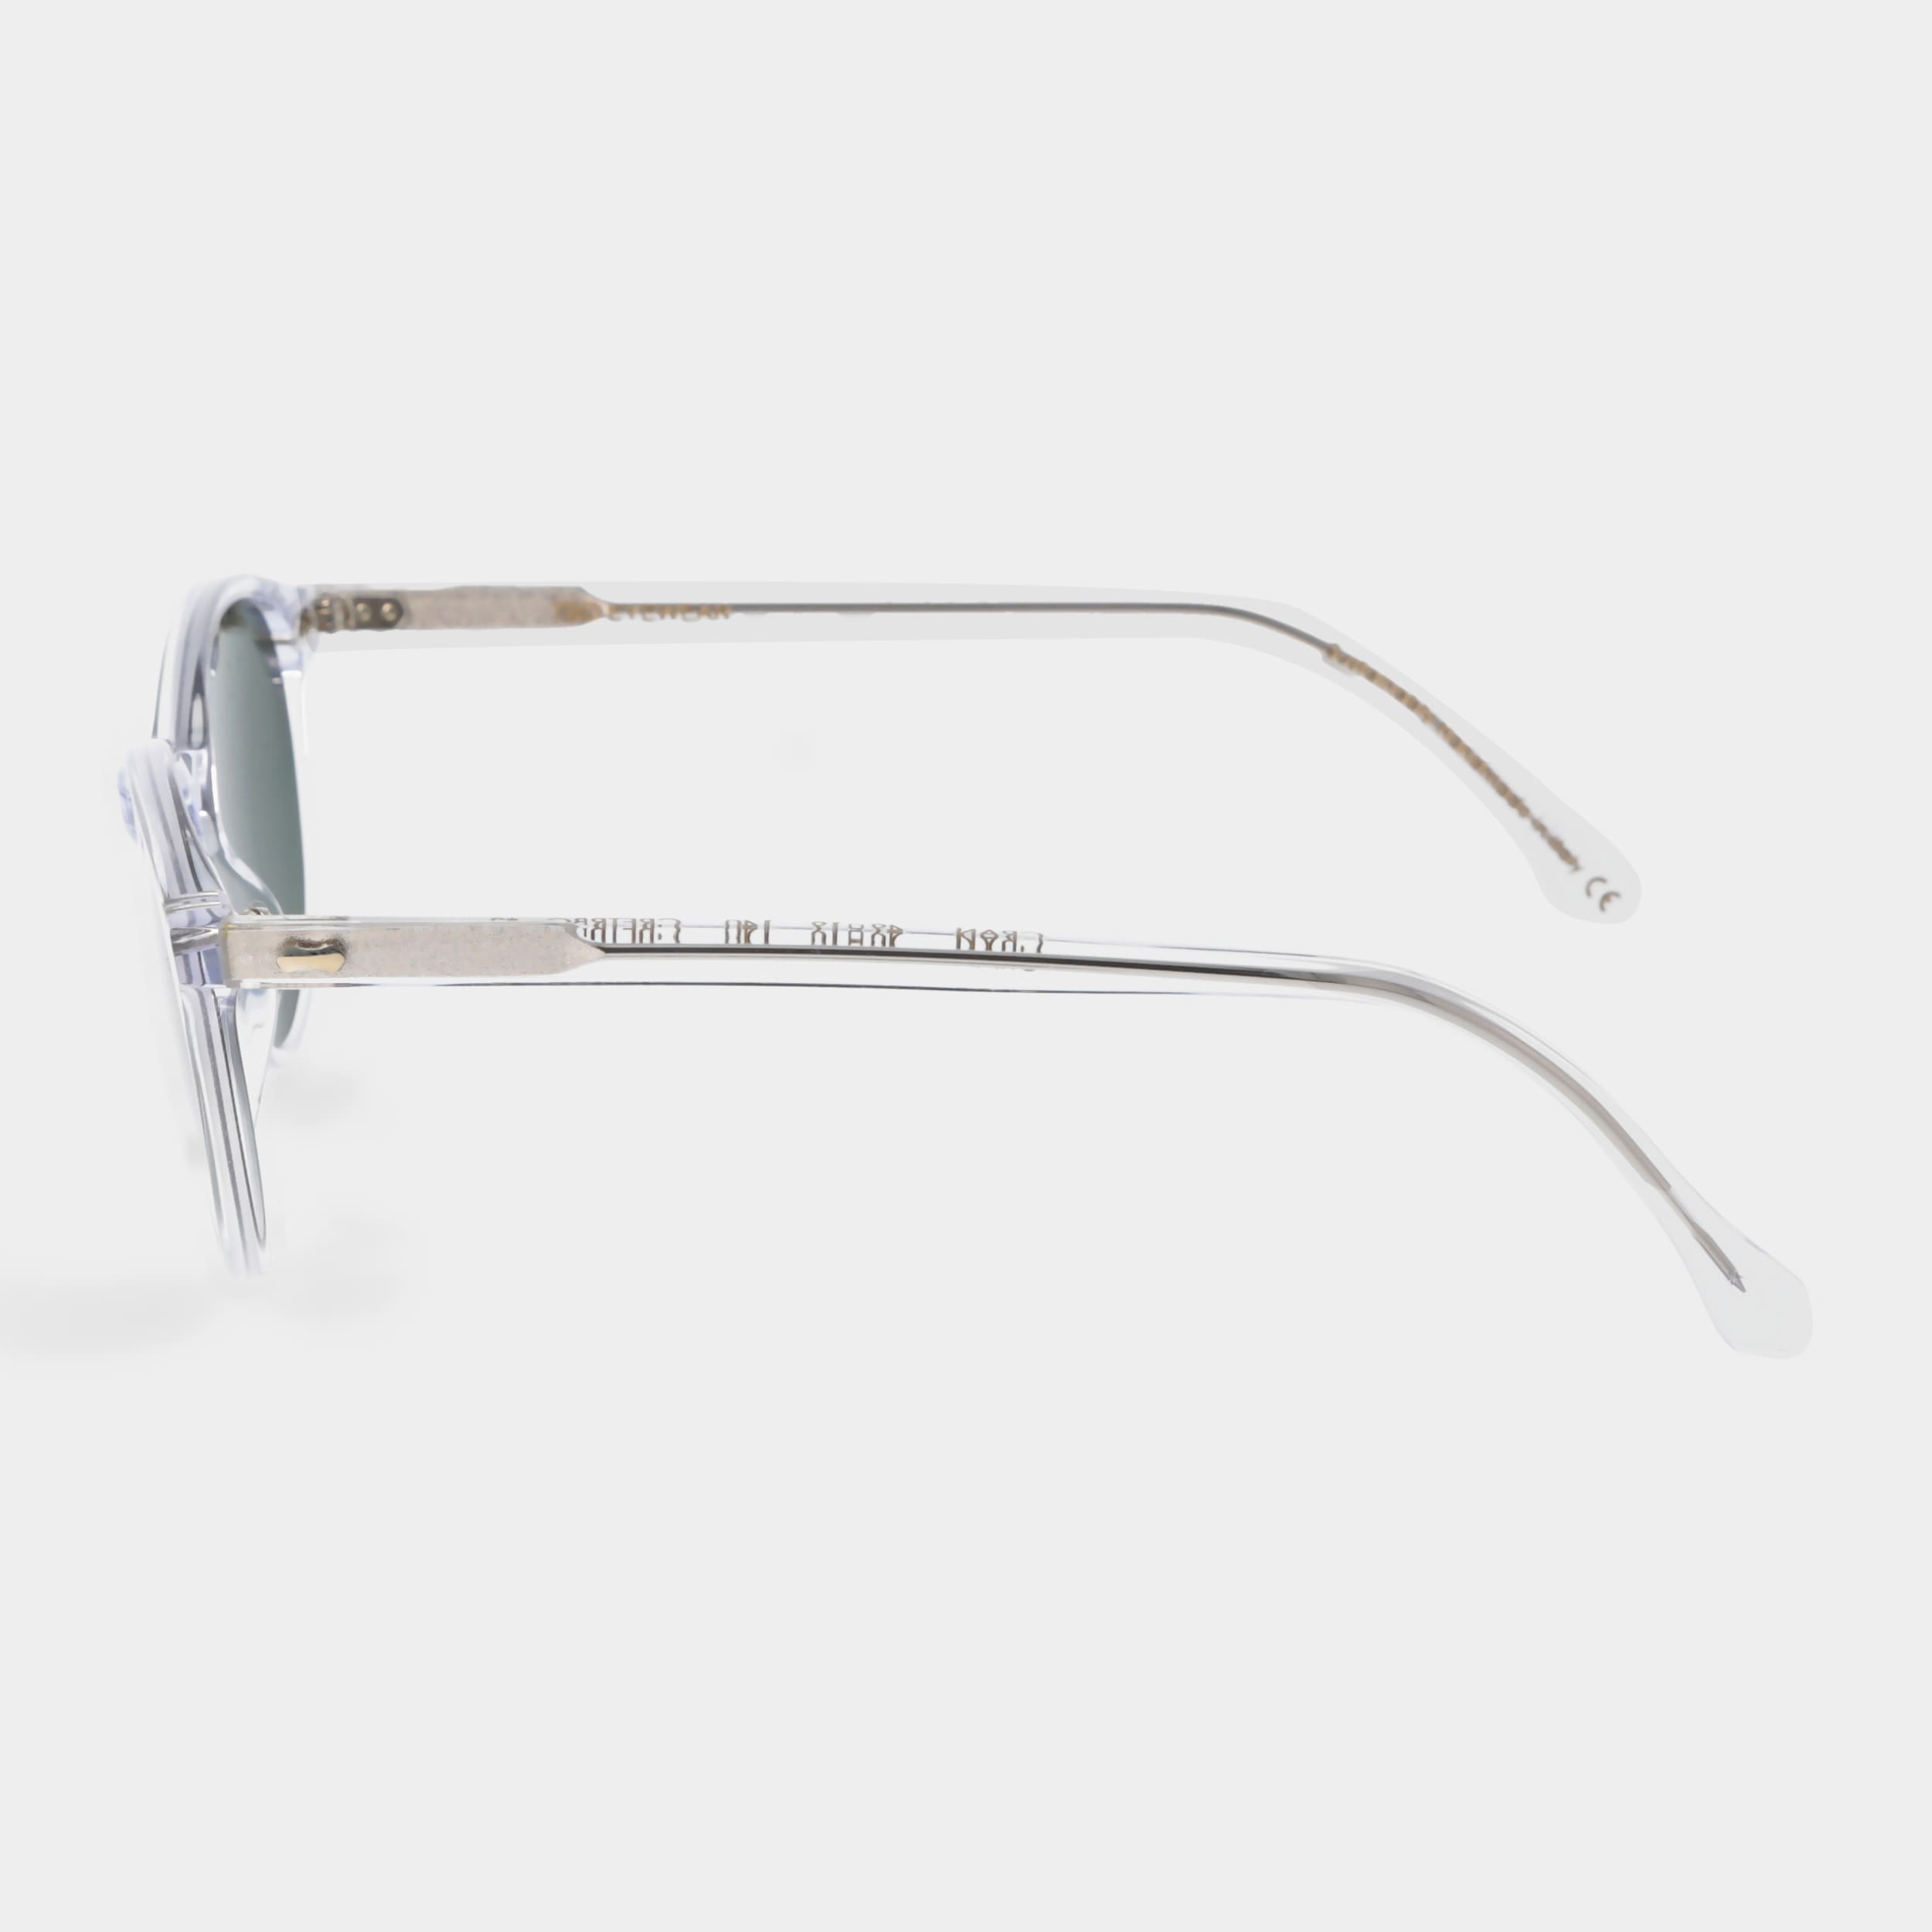 Sonnenbrille mit Gläsern TBD polarisierten Eyewear und | klarem Rahmen